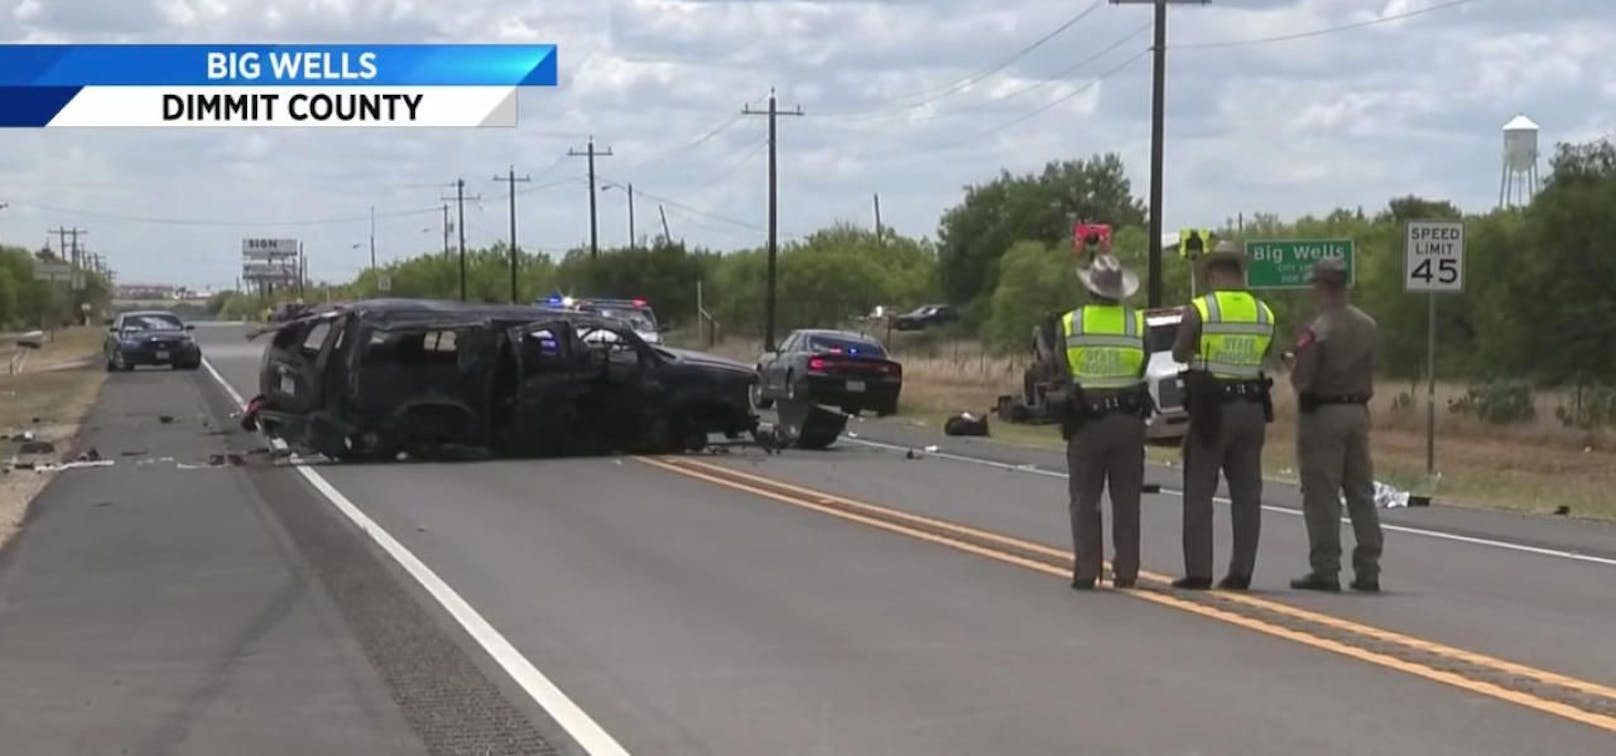 Unfallort: Bei Big Wells (Texas) war der Wagen der Migranten auf der Flucht vor der Polizei von der Straße abgekommen. 